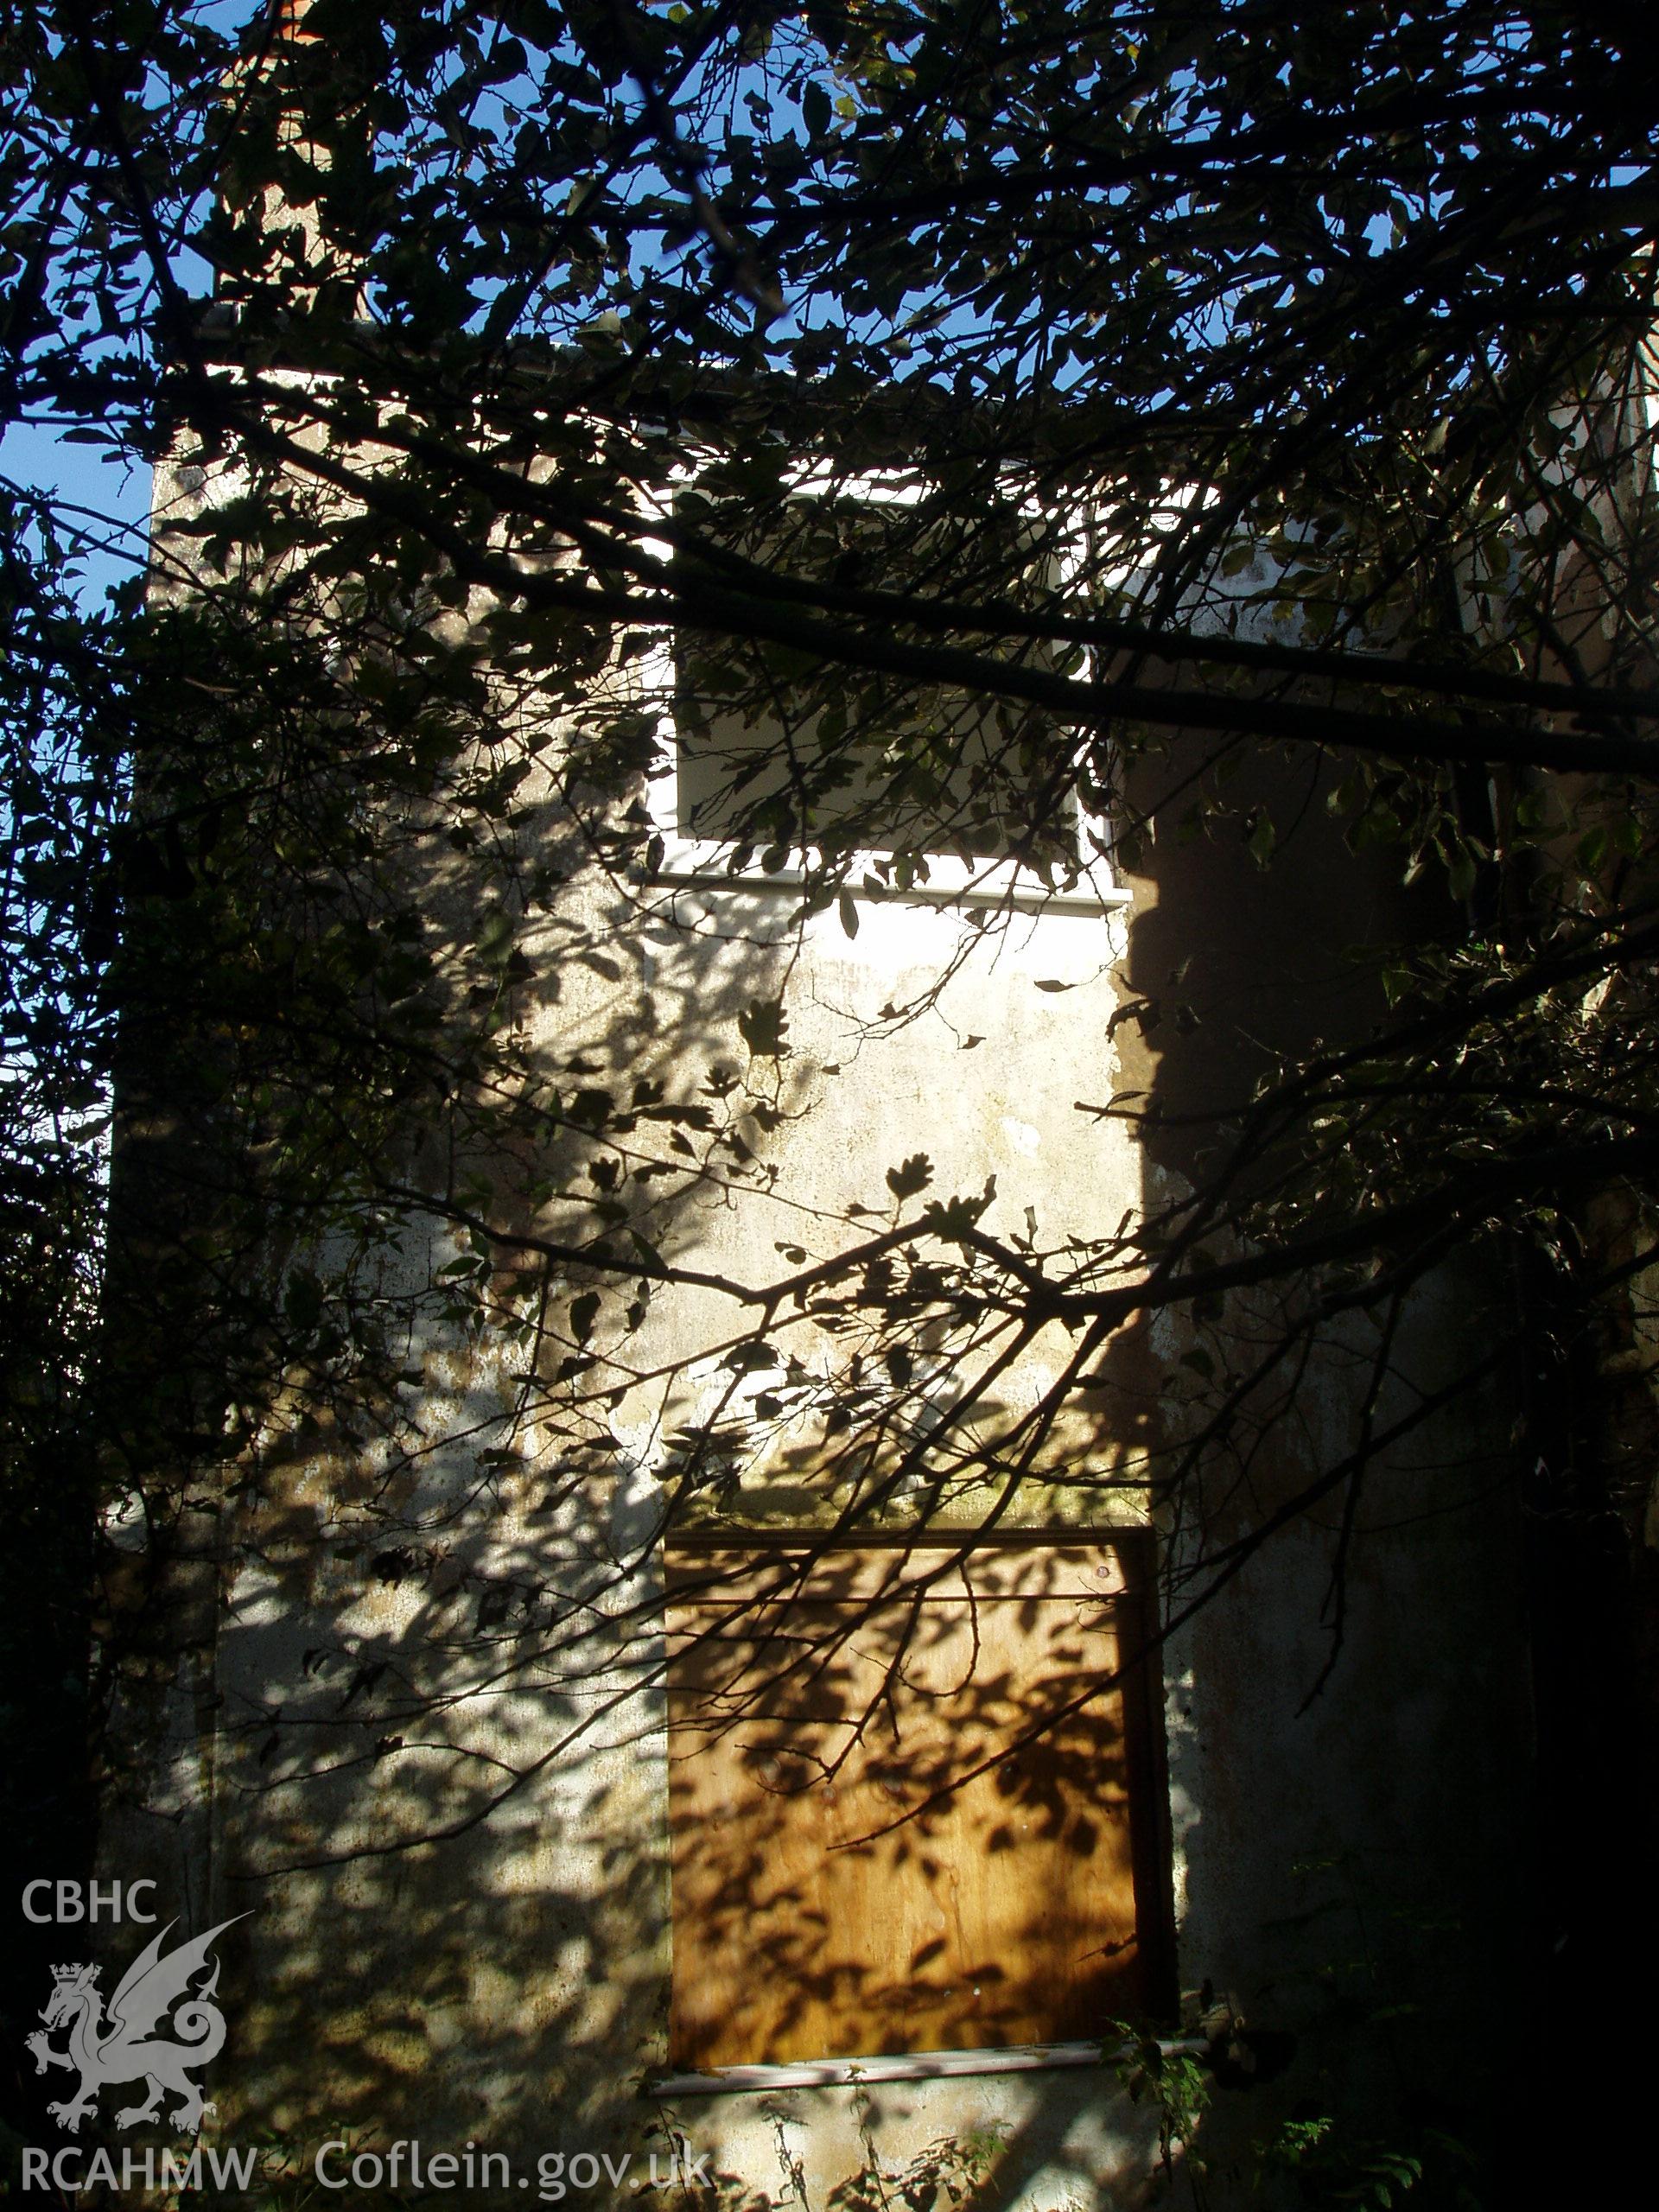 Bryn Seion Chapel, digital colour photograph showing exterior, chapel house.